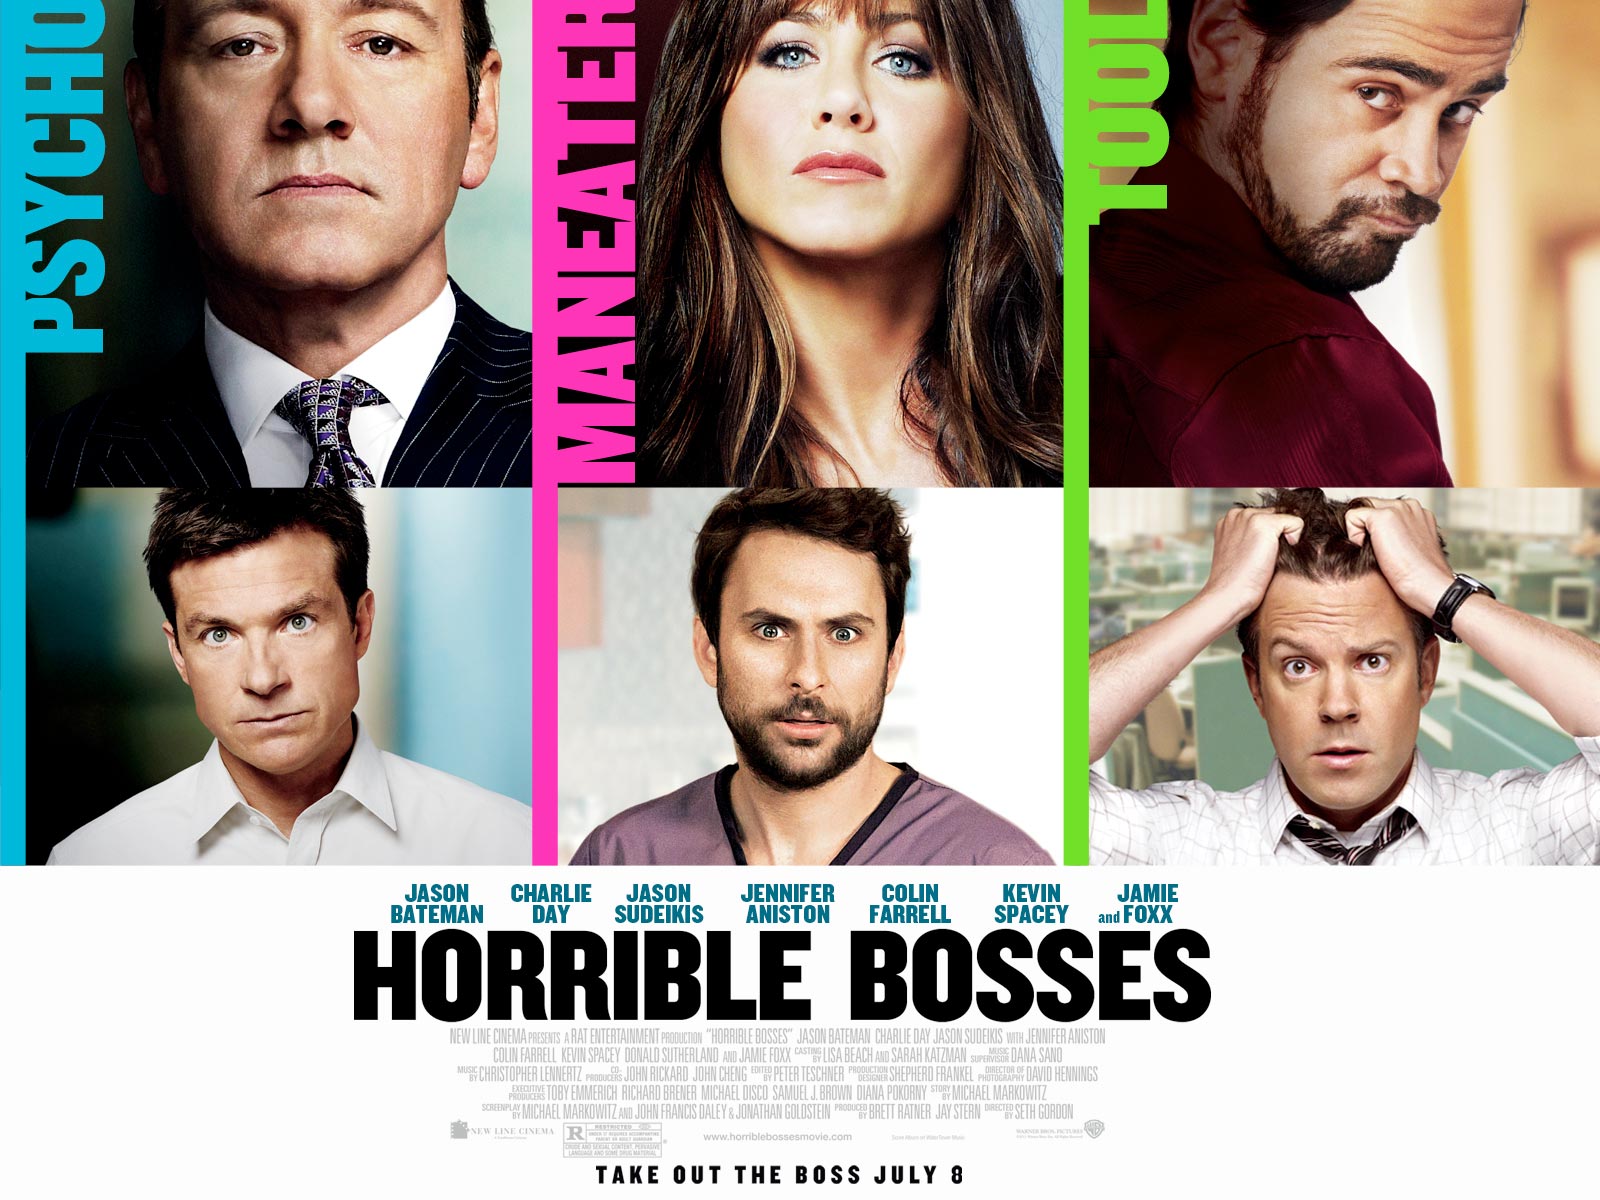 Horrible Bosses Review